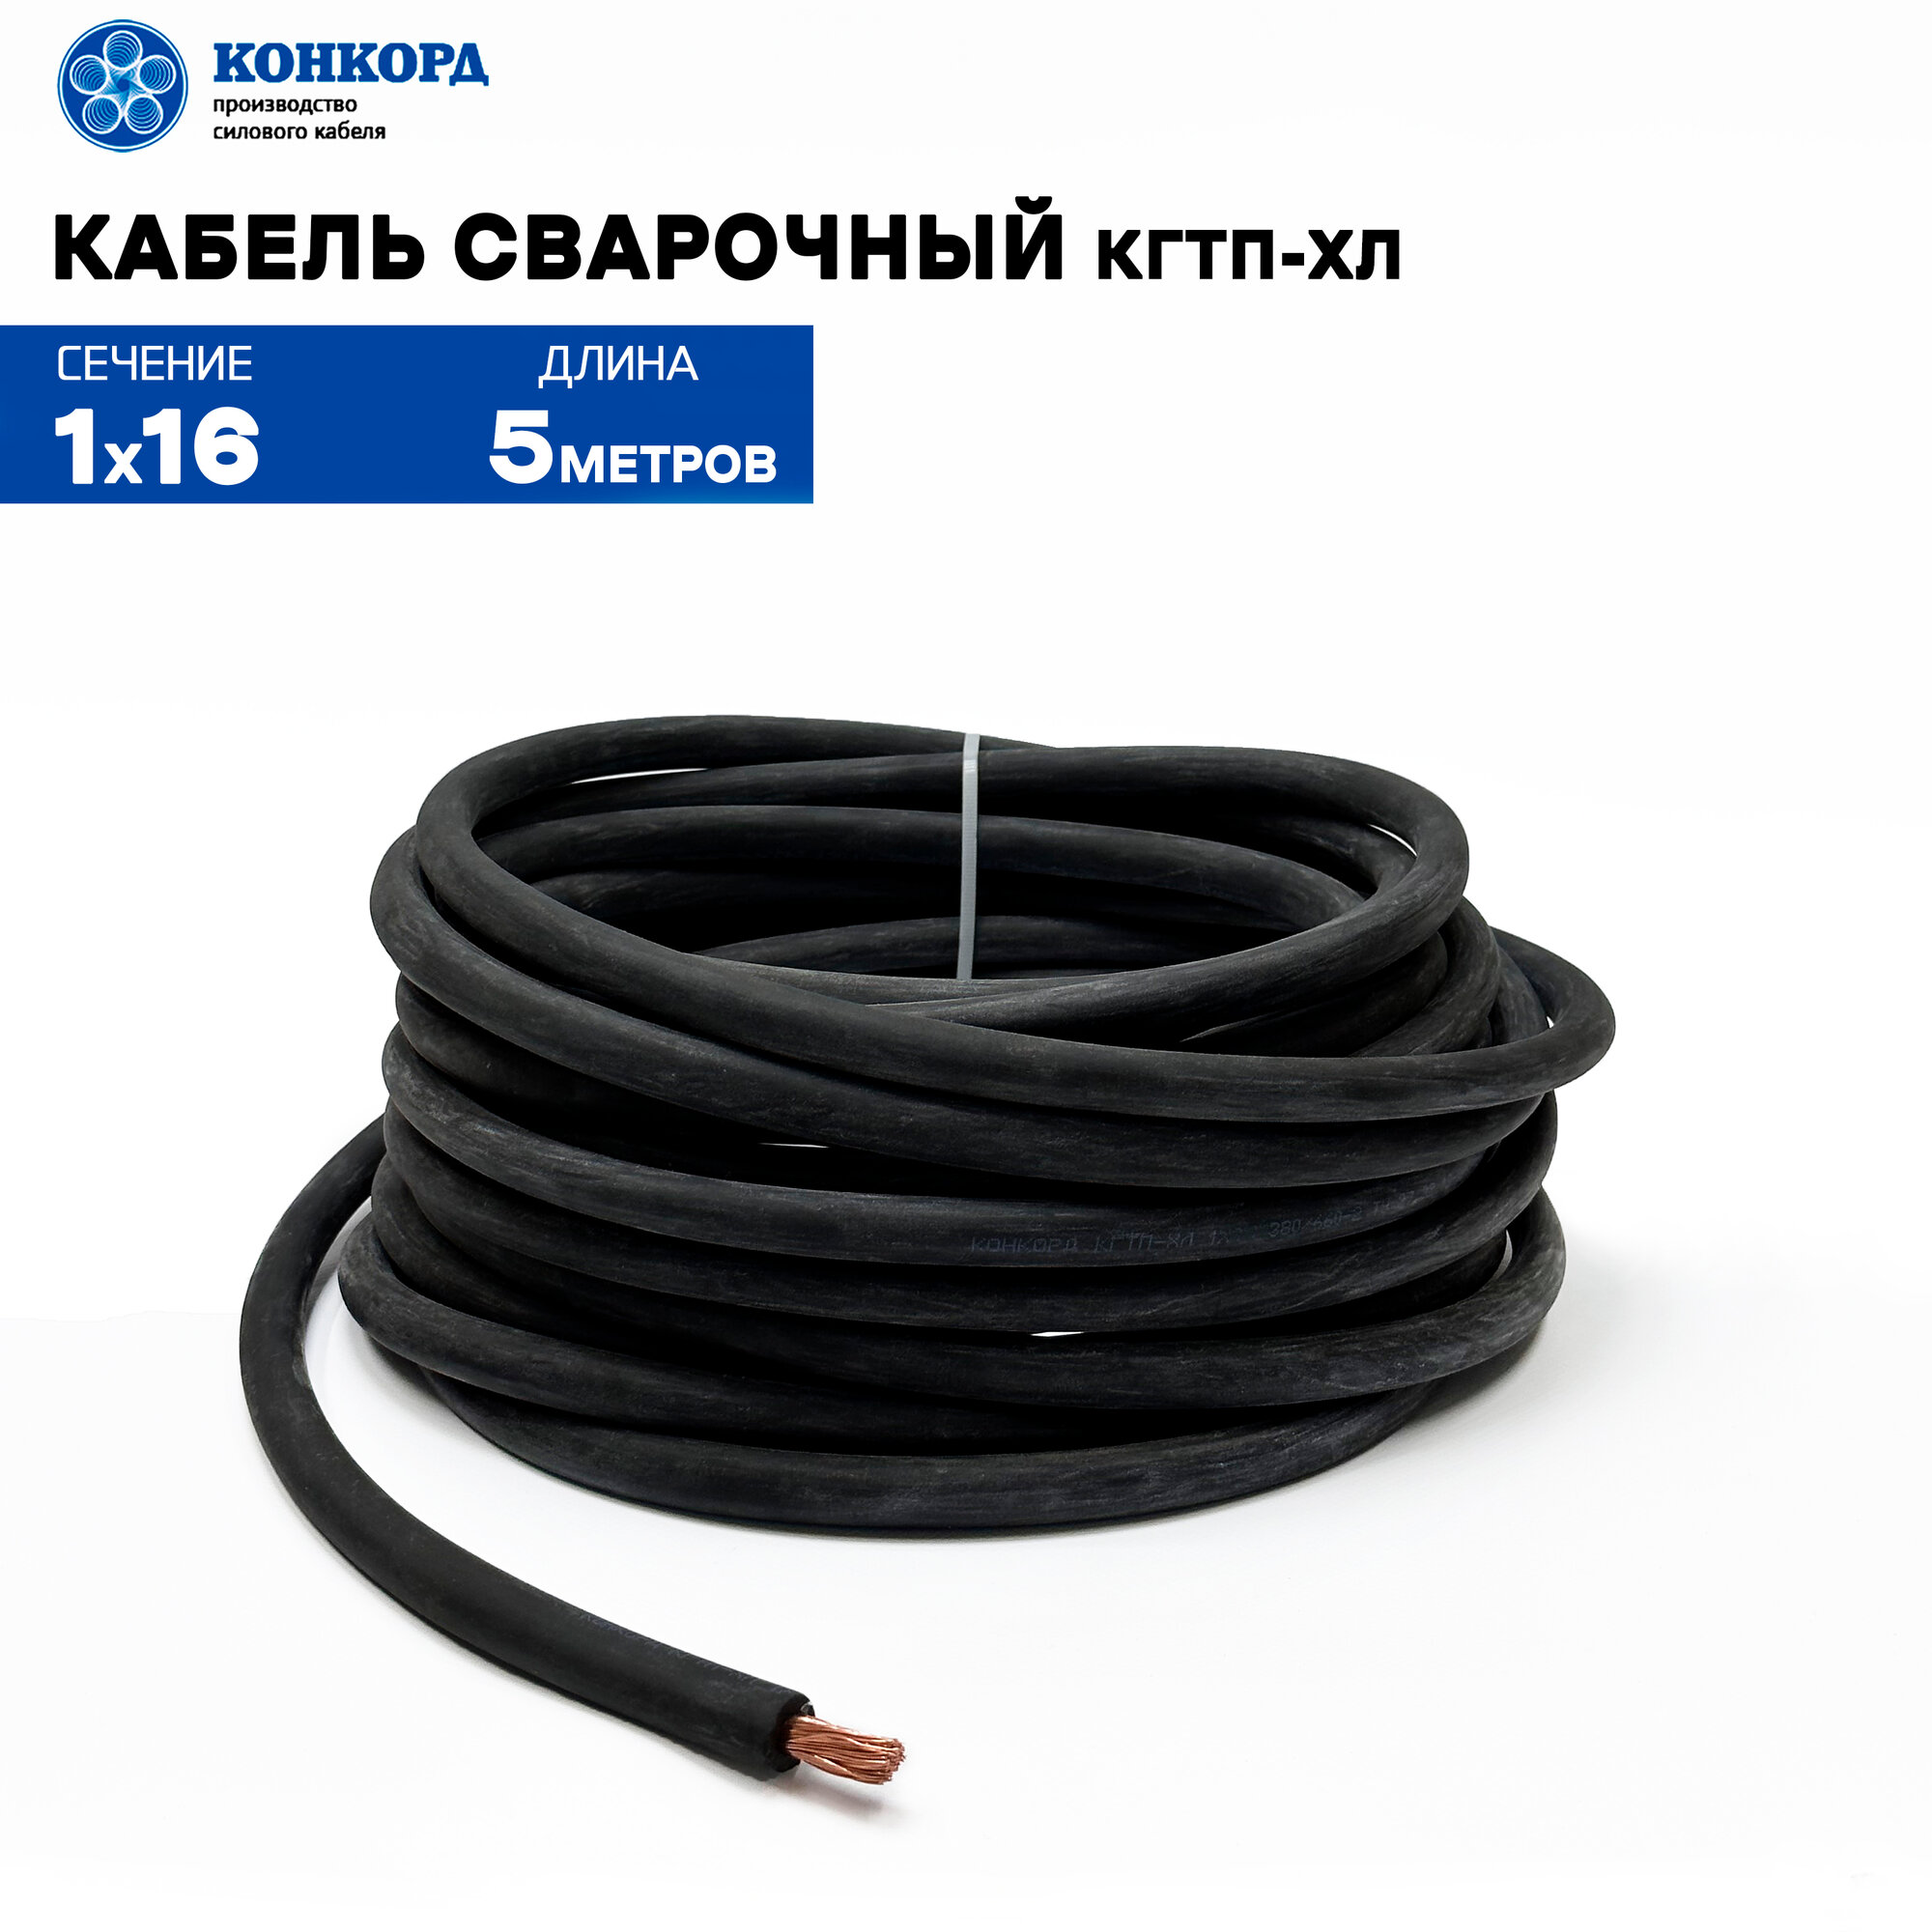 Сварочный кабель КГтп-ХЛ 16кв. мм 5метра.